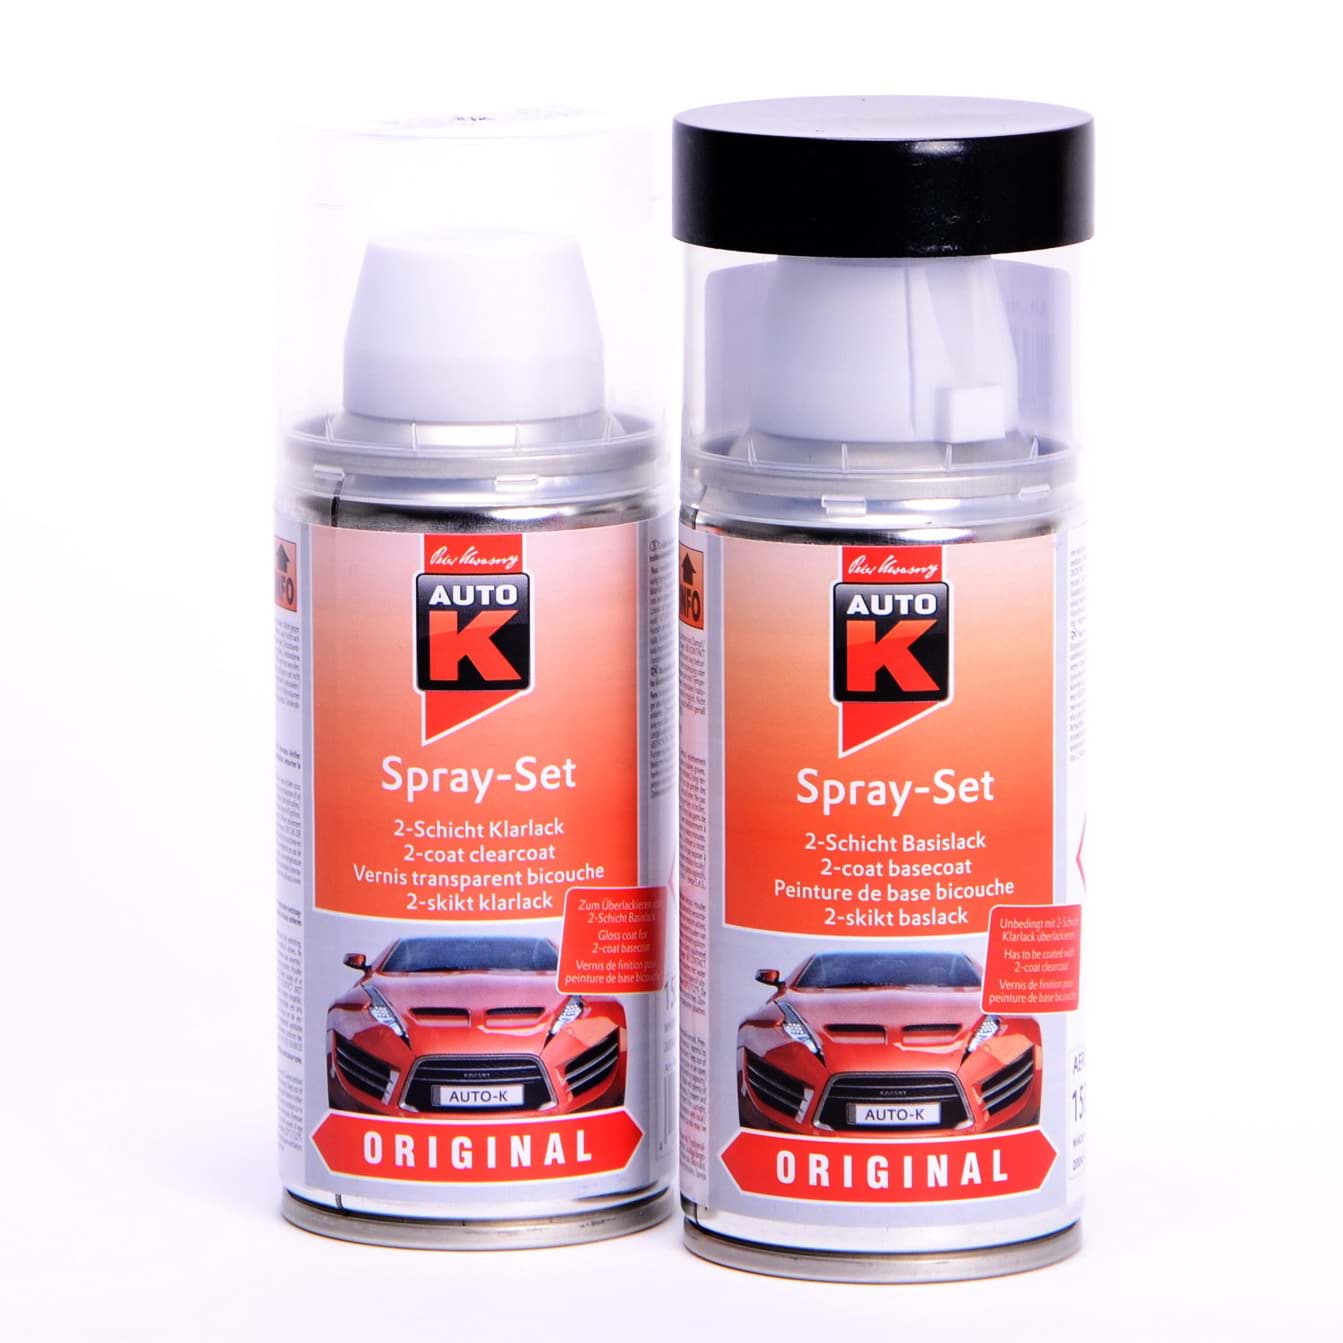 Изображение Auto-K Spray-Set Autolack für Volkswagen, VW, Audi L902 Grauweiss 20733